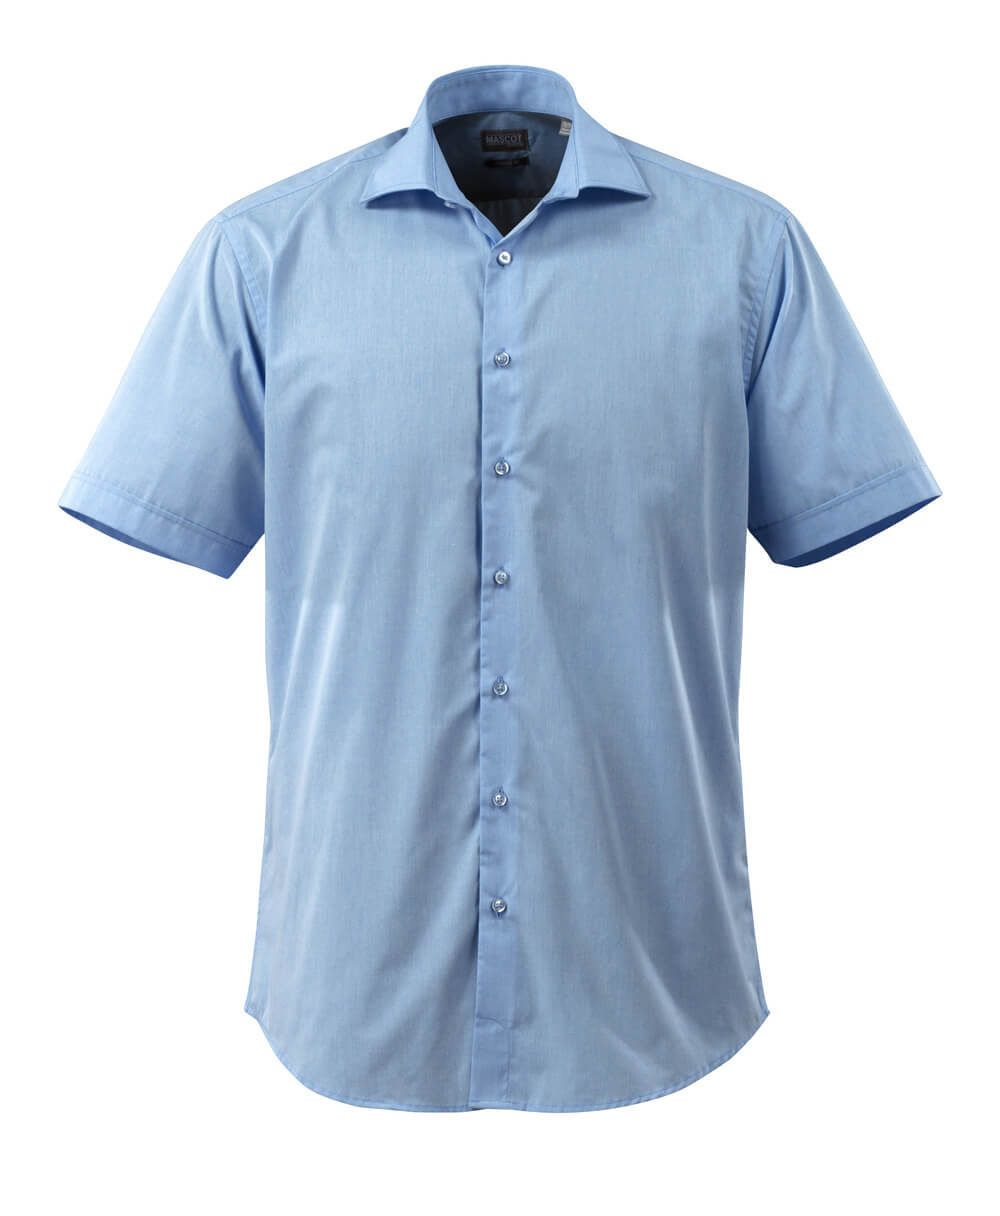 50632-984-71 Overhemd, met korte mouwen - lichtblauw